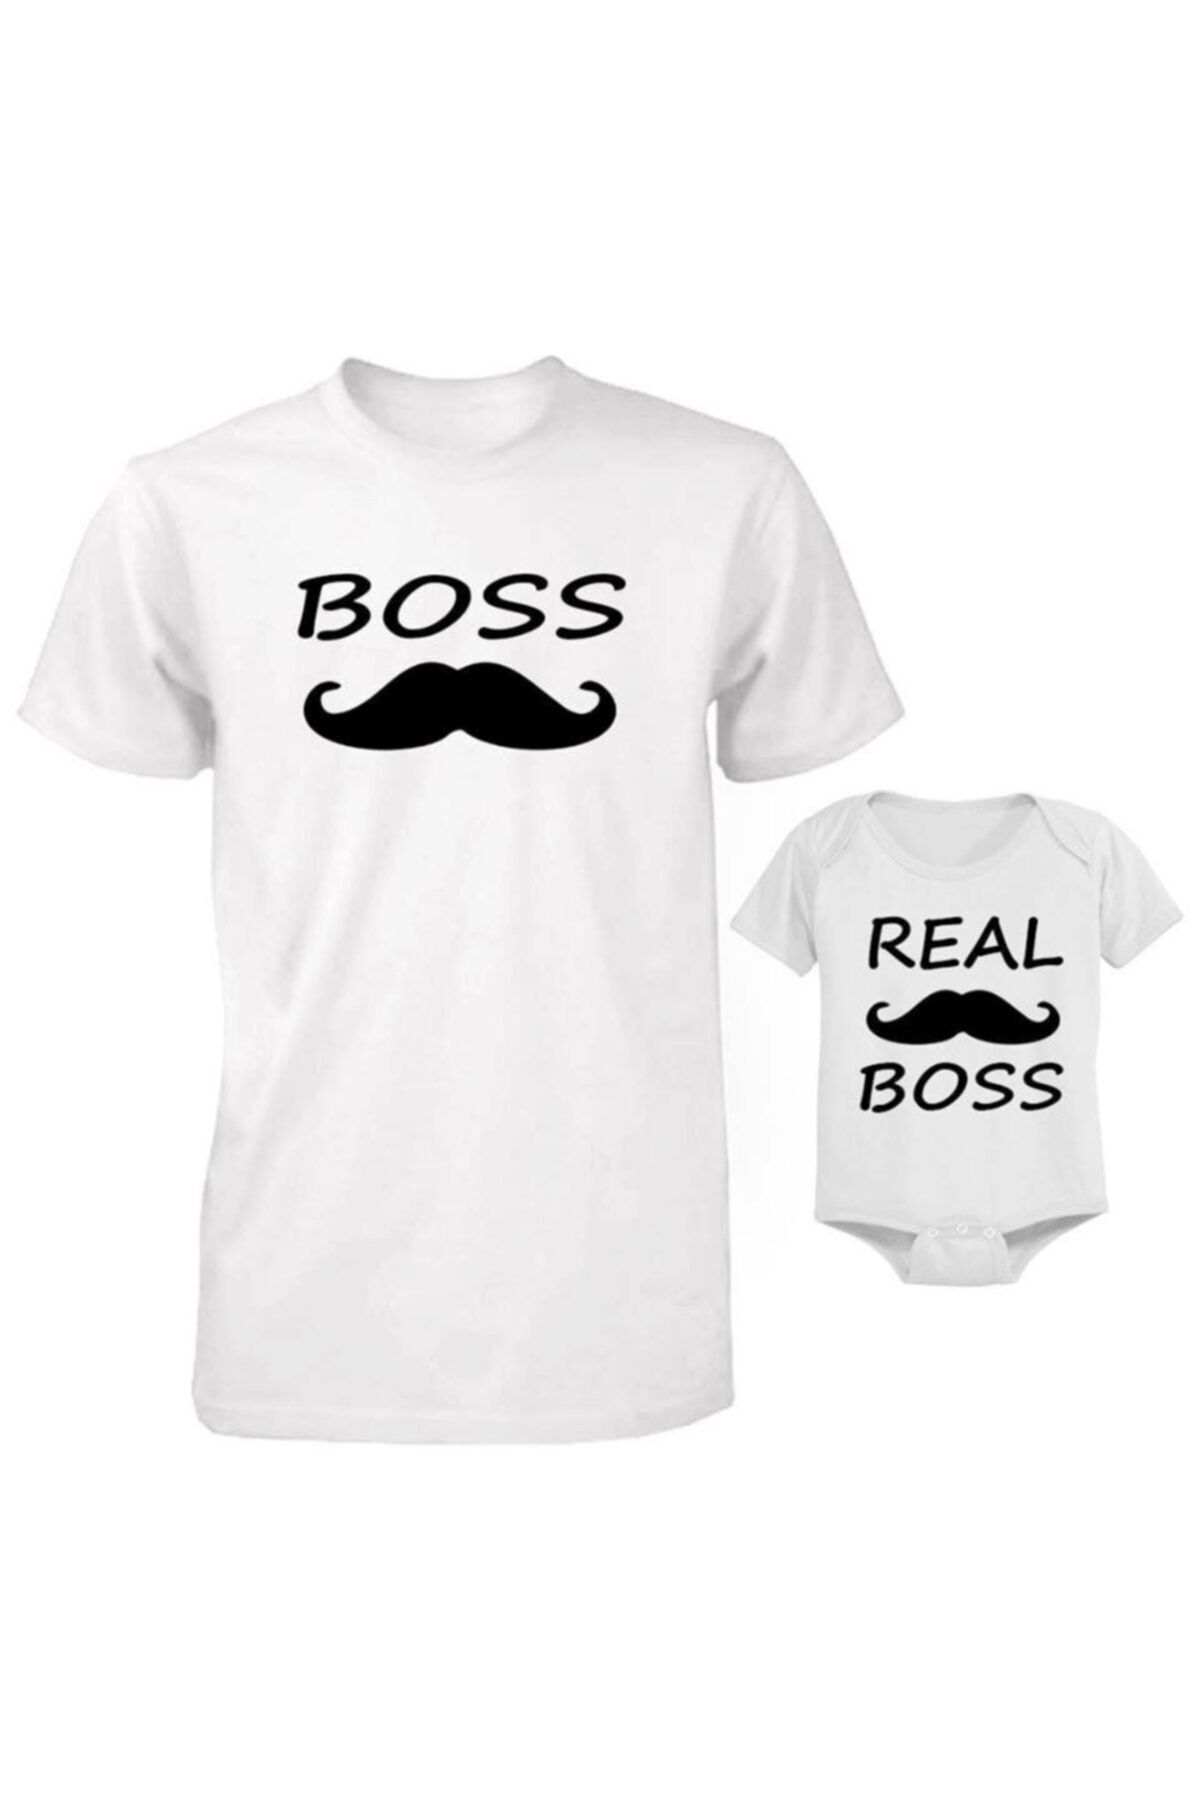 HediyeMania Baba Oğul Bebek Zıbınlı The Boss Baskılı Beyaz Tişört (kombin Yapılabilir Fiyat Ayrı Ayrıdır)